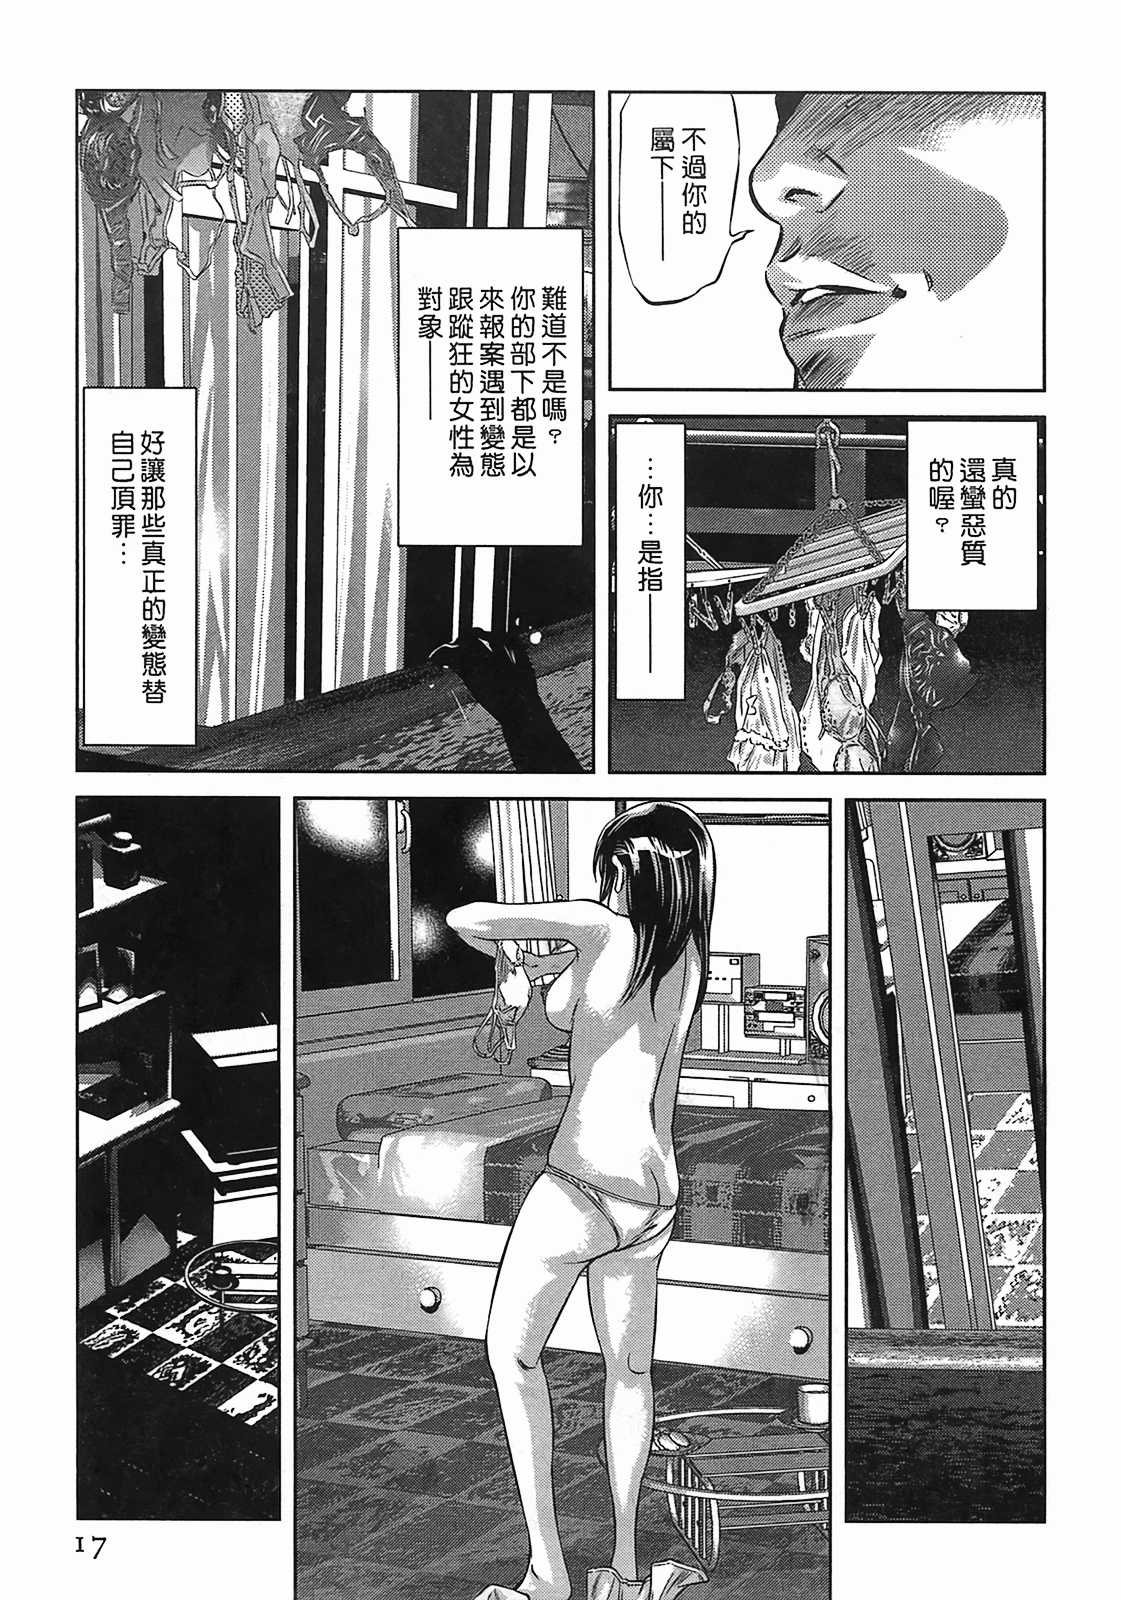 [Hirohisa Onikubo] Lady Crow 03 (Chinese) (一般コミック) [鬼窪浩久] 女鴉 レディ・クロウ 第03卷